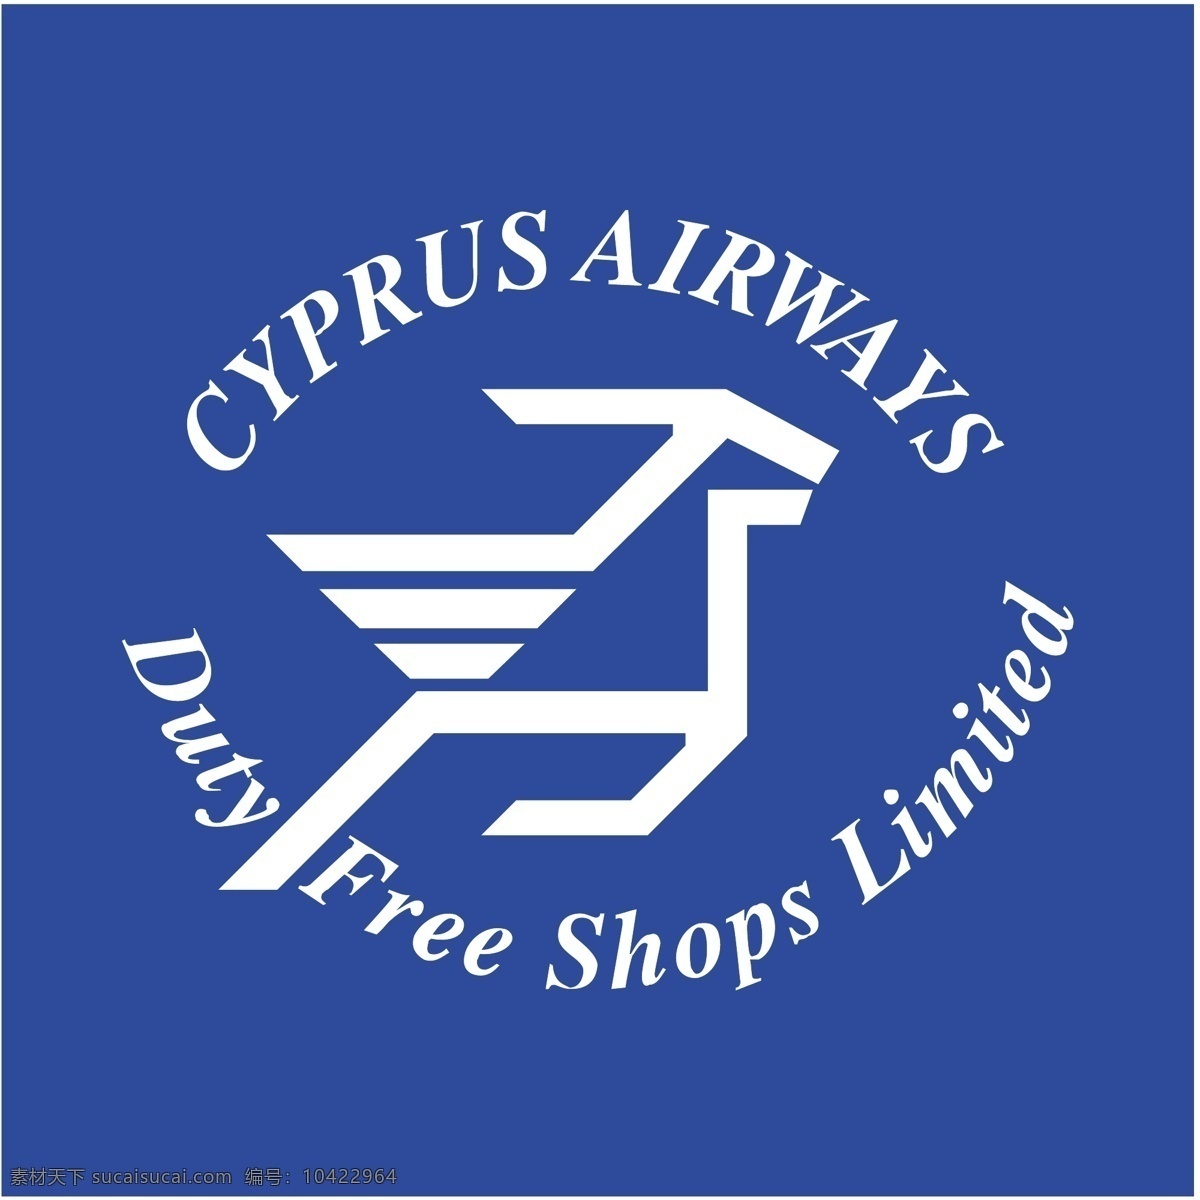 塞浦路斯 航空公司 标志 logo 矢量 塞浦路斯航空 航空 矢量标志航空 向量 矢量图 建筑家居